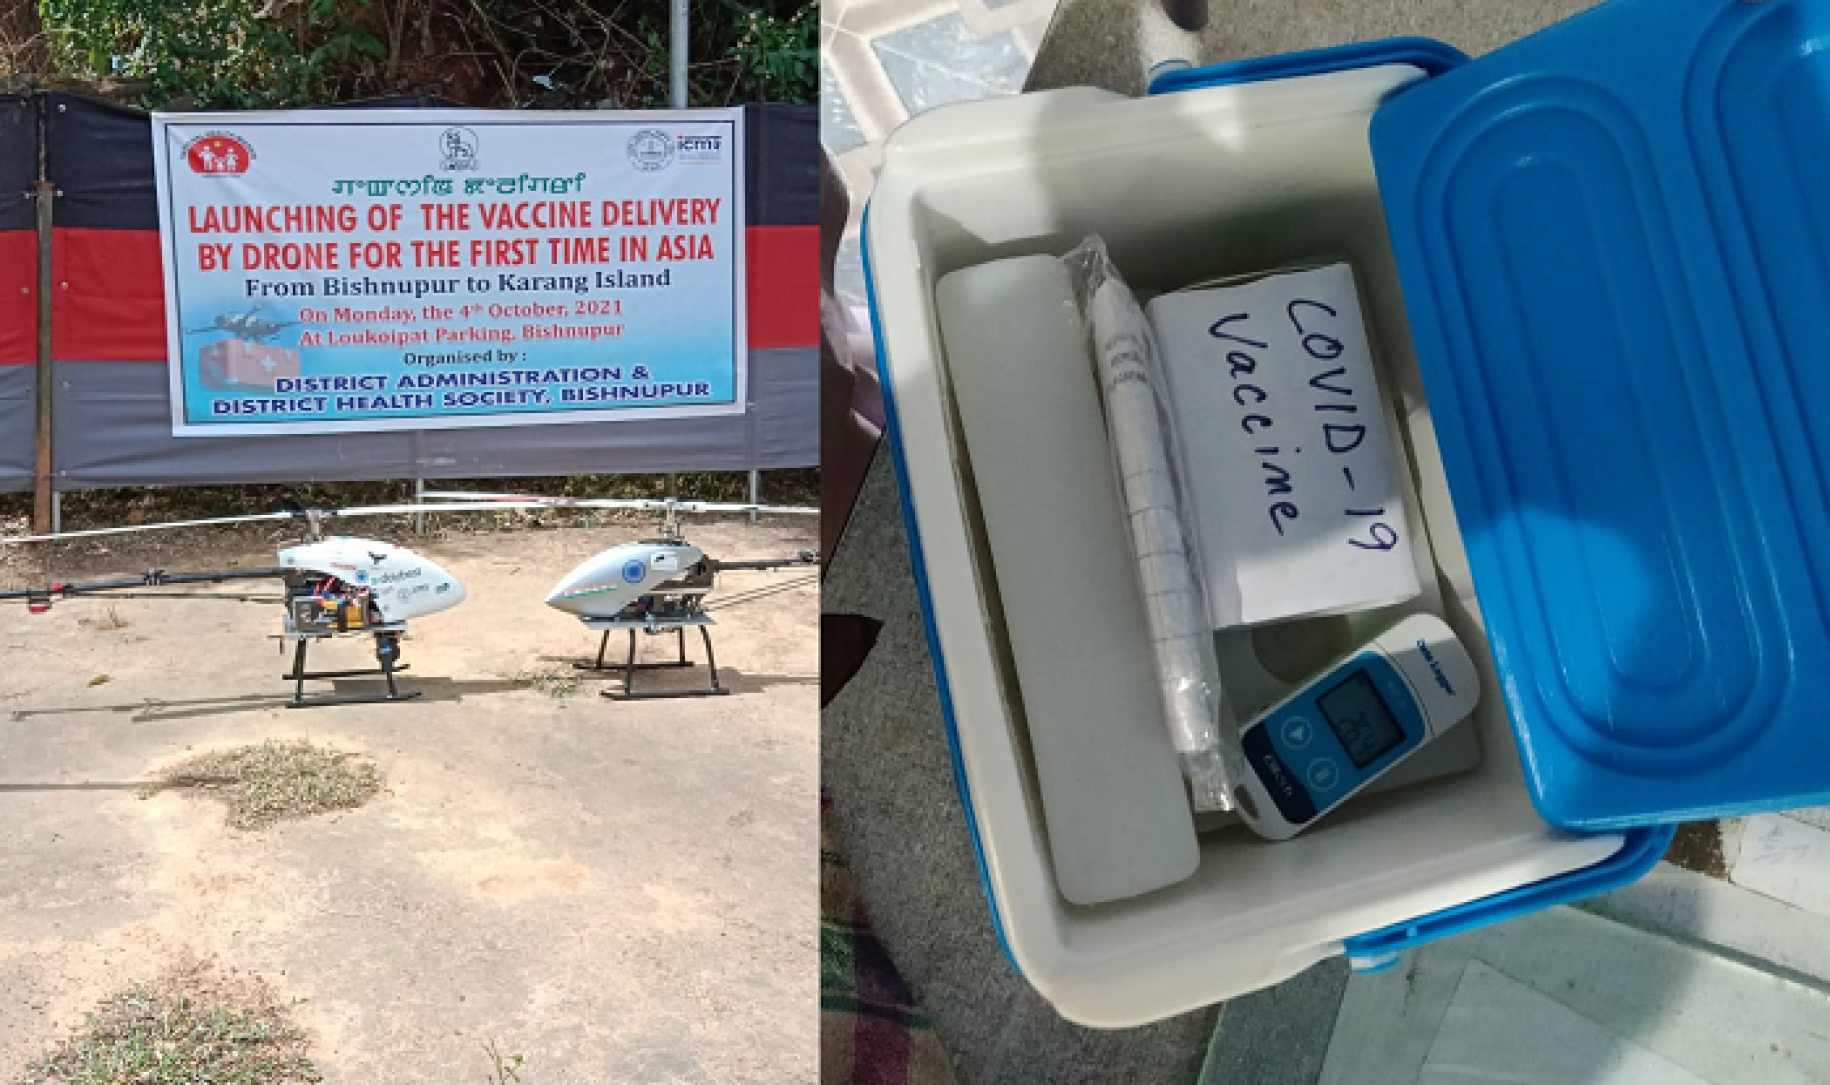 Deux photos placées côte à côte, l'une montrant des glacières contenant des doses de vaccin anti COVID-19 et l'autre montrant des drones utilisés pour acheminer des vaccins anti COVID-19.